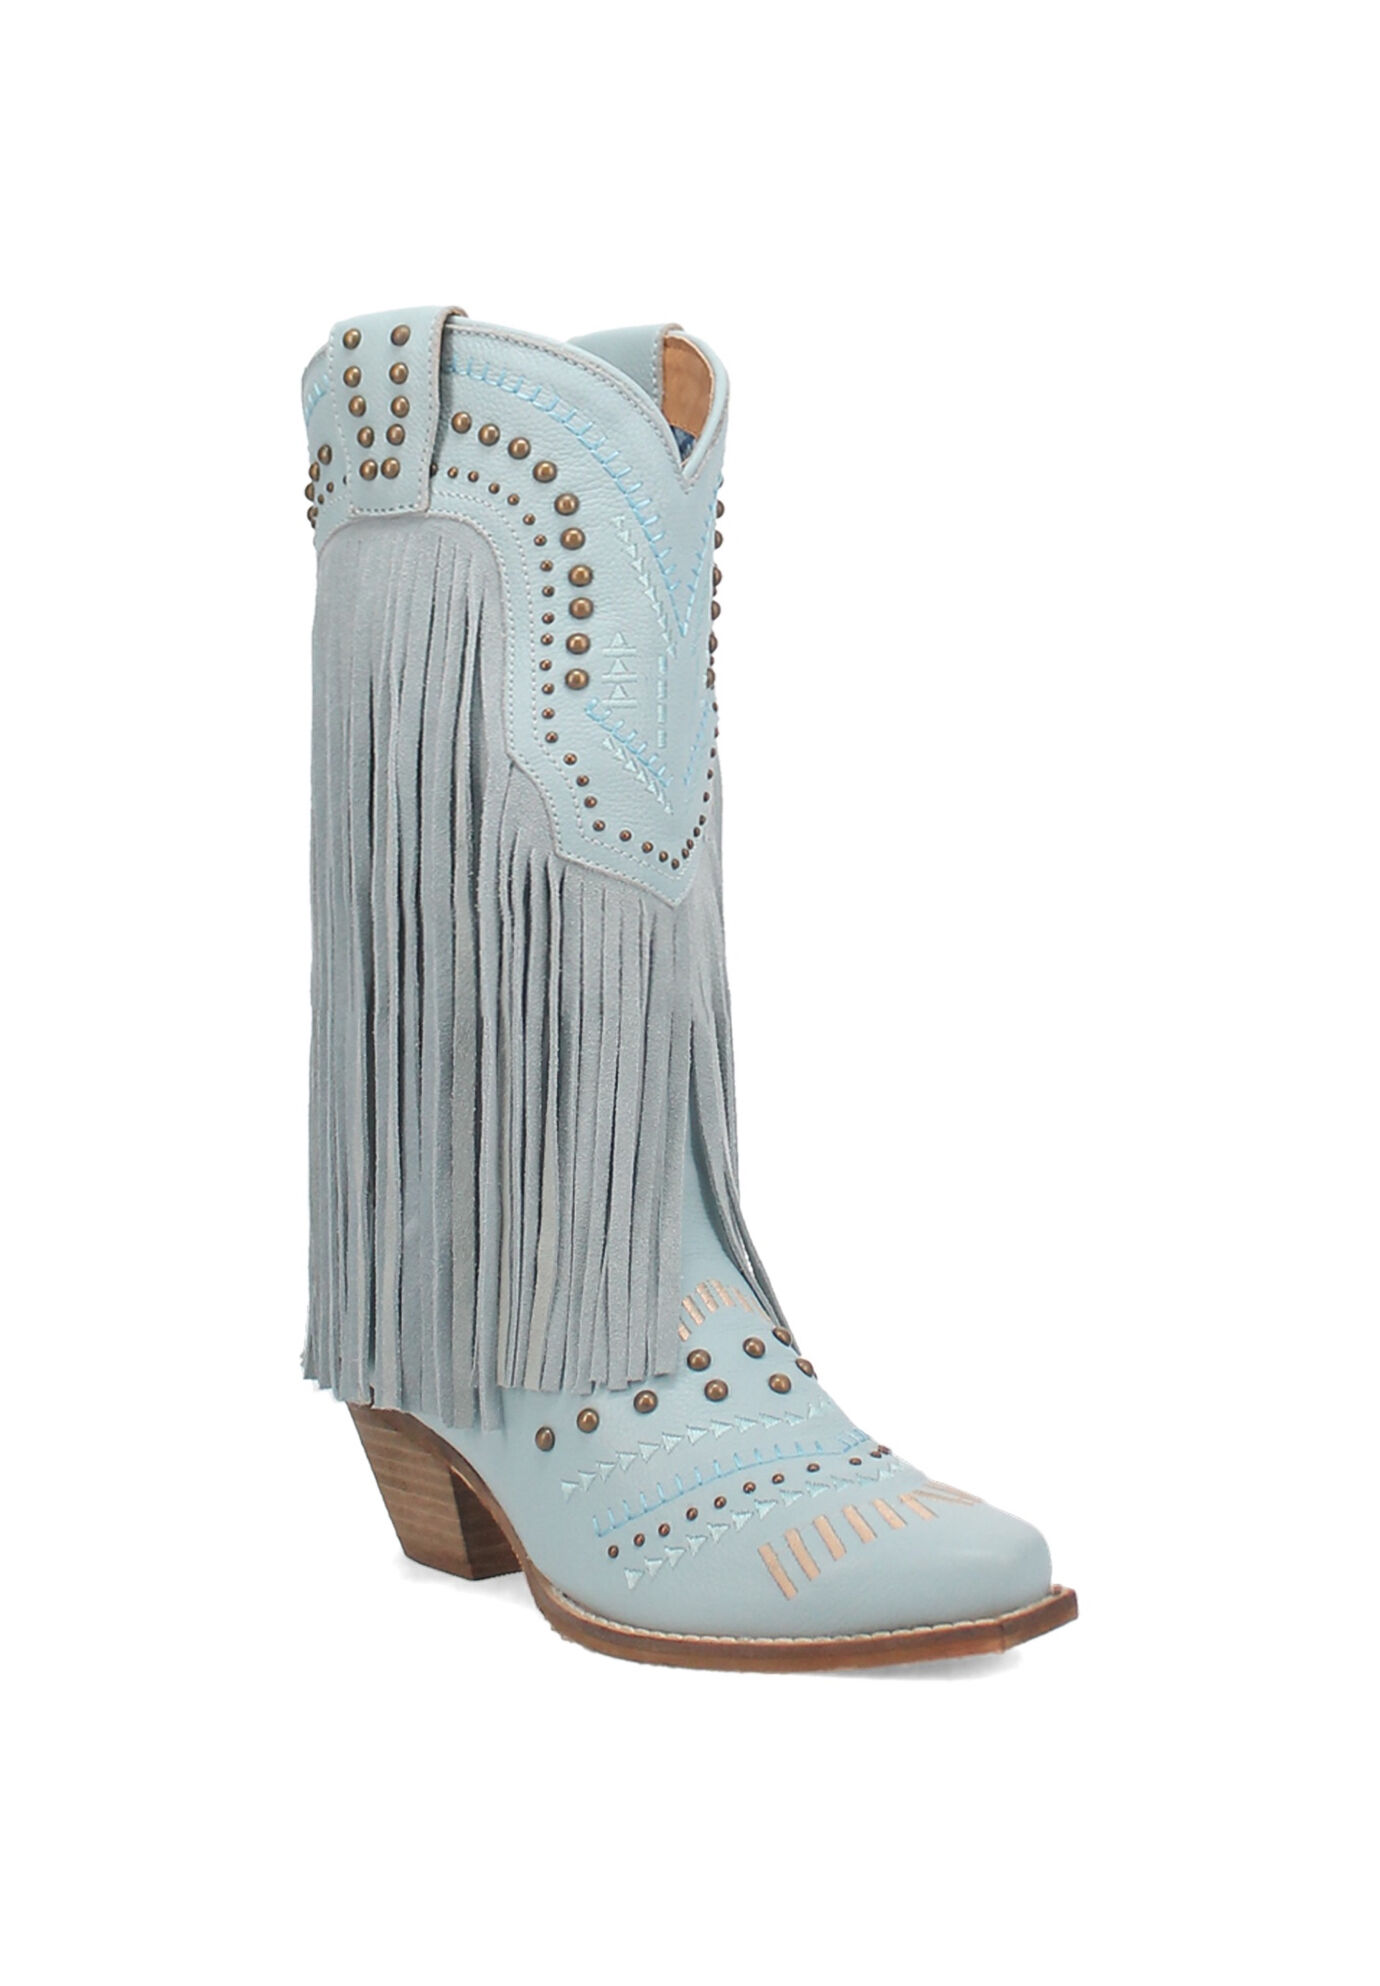 Women's Gypsy Western Fringe Boot by Dingo in Blue (Size 6 M)